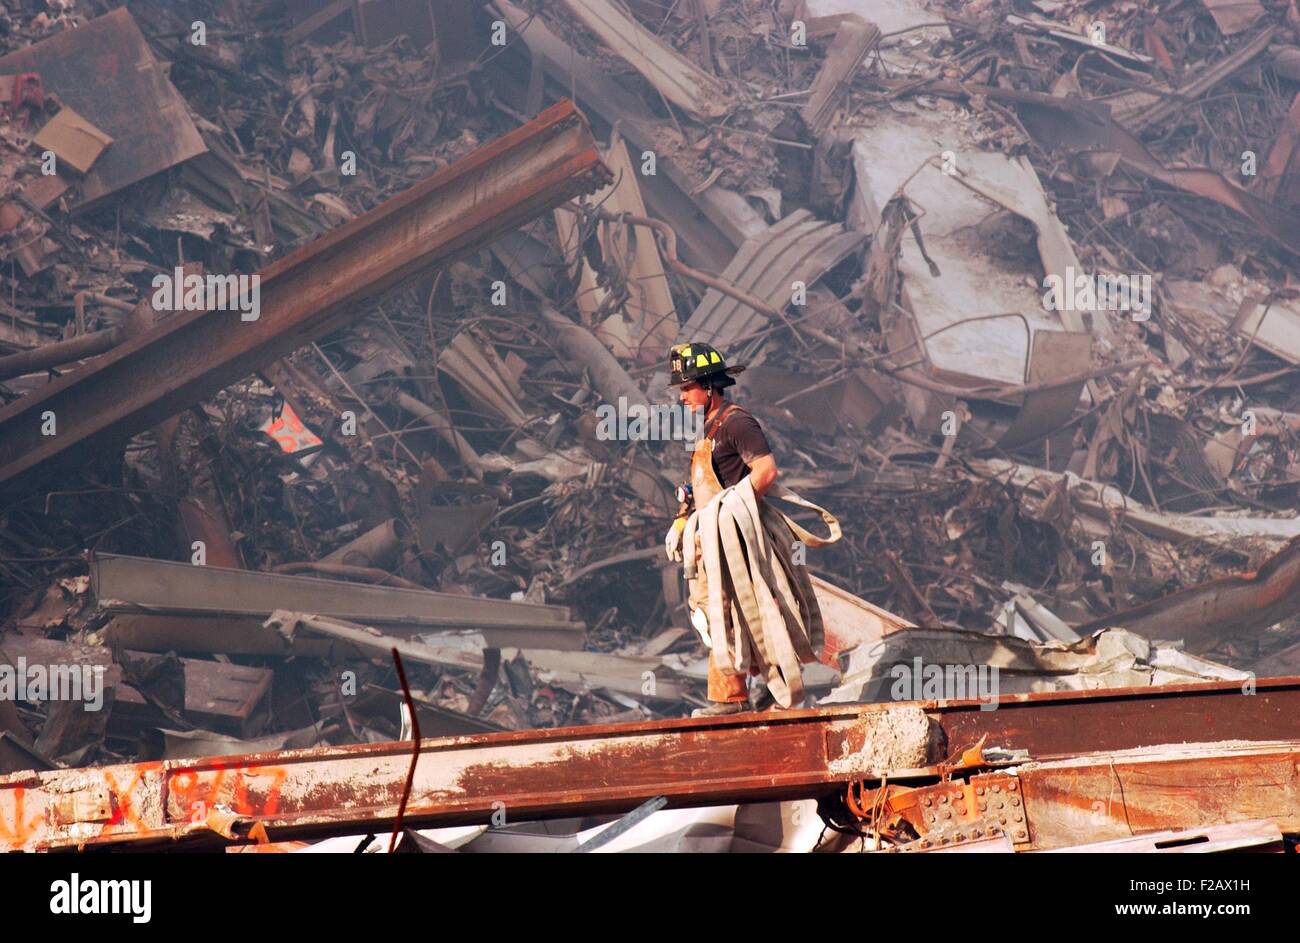 New York City Feuerwehrmann trägt ein Feuerwehrschlauch über schwelenden Bränden und Trümmer am Ground Zero, 18. September 2001. World Trade Center in New York City, nach dem 11. September 2001 Terroranschläge. (BSLOC 2015 2 97) Stockfoto